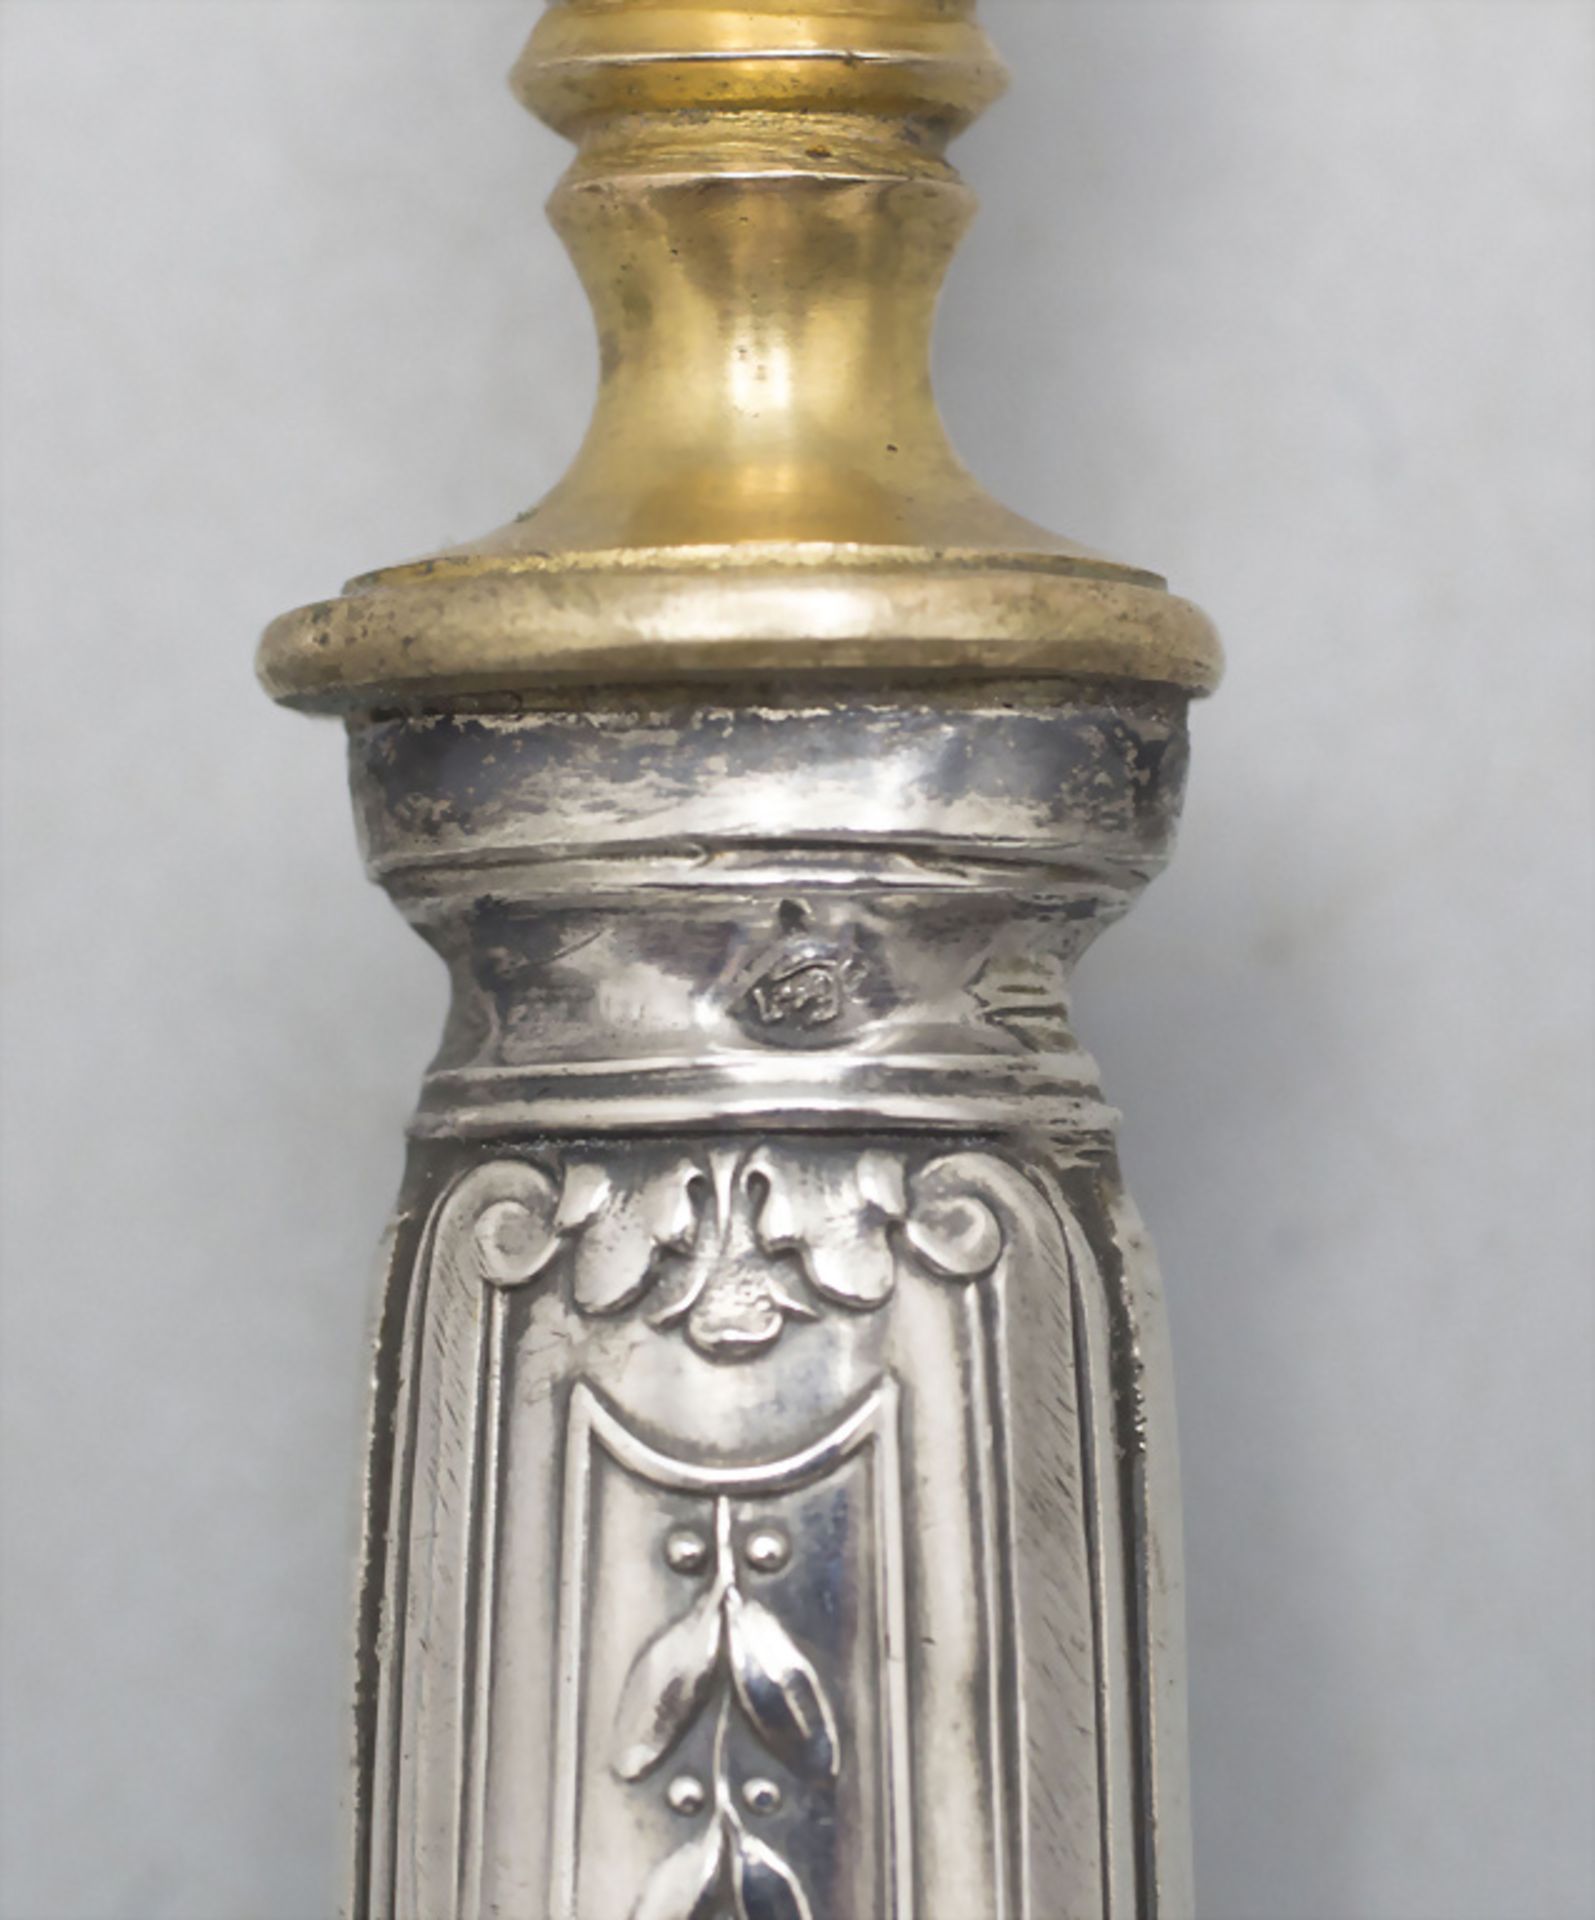 Saucenkelle / A silver gravy ladle, Paris, um 1900 - Image 3 of 5